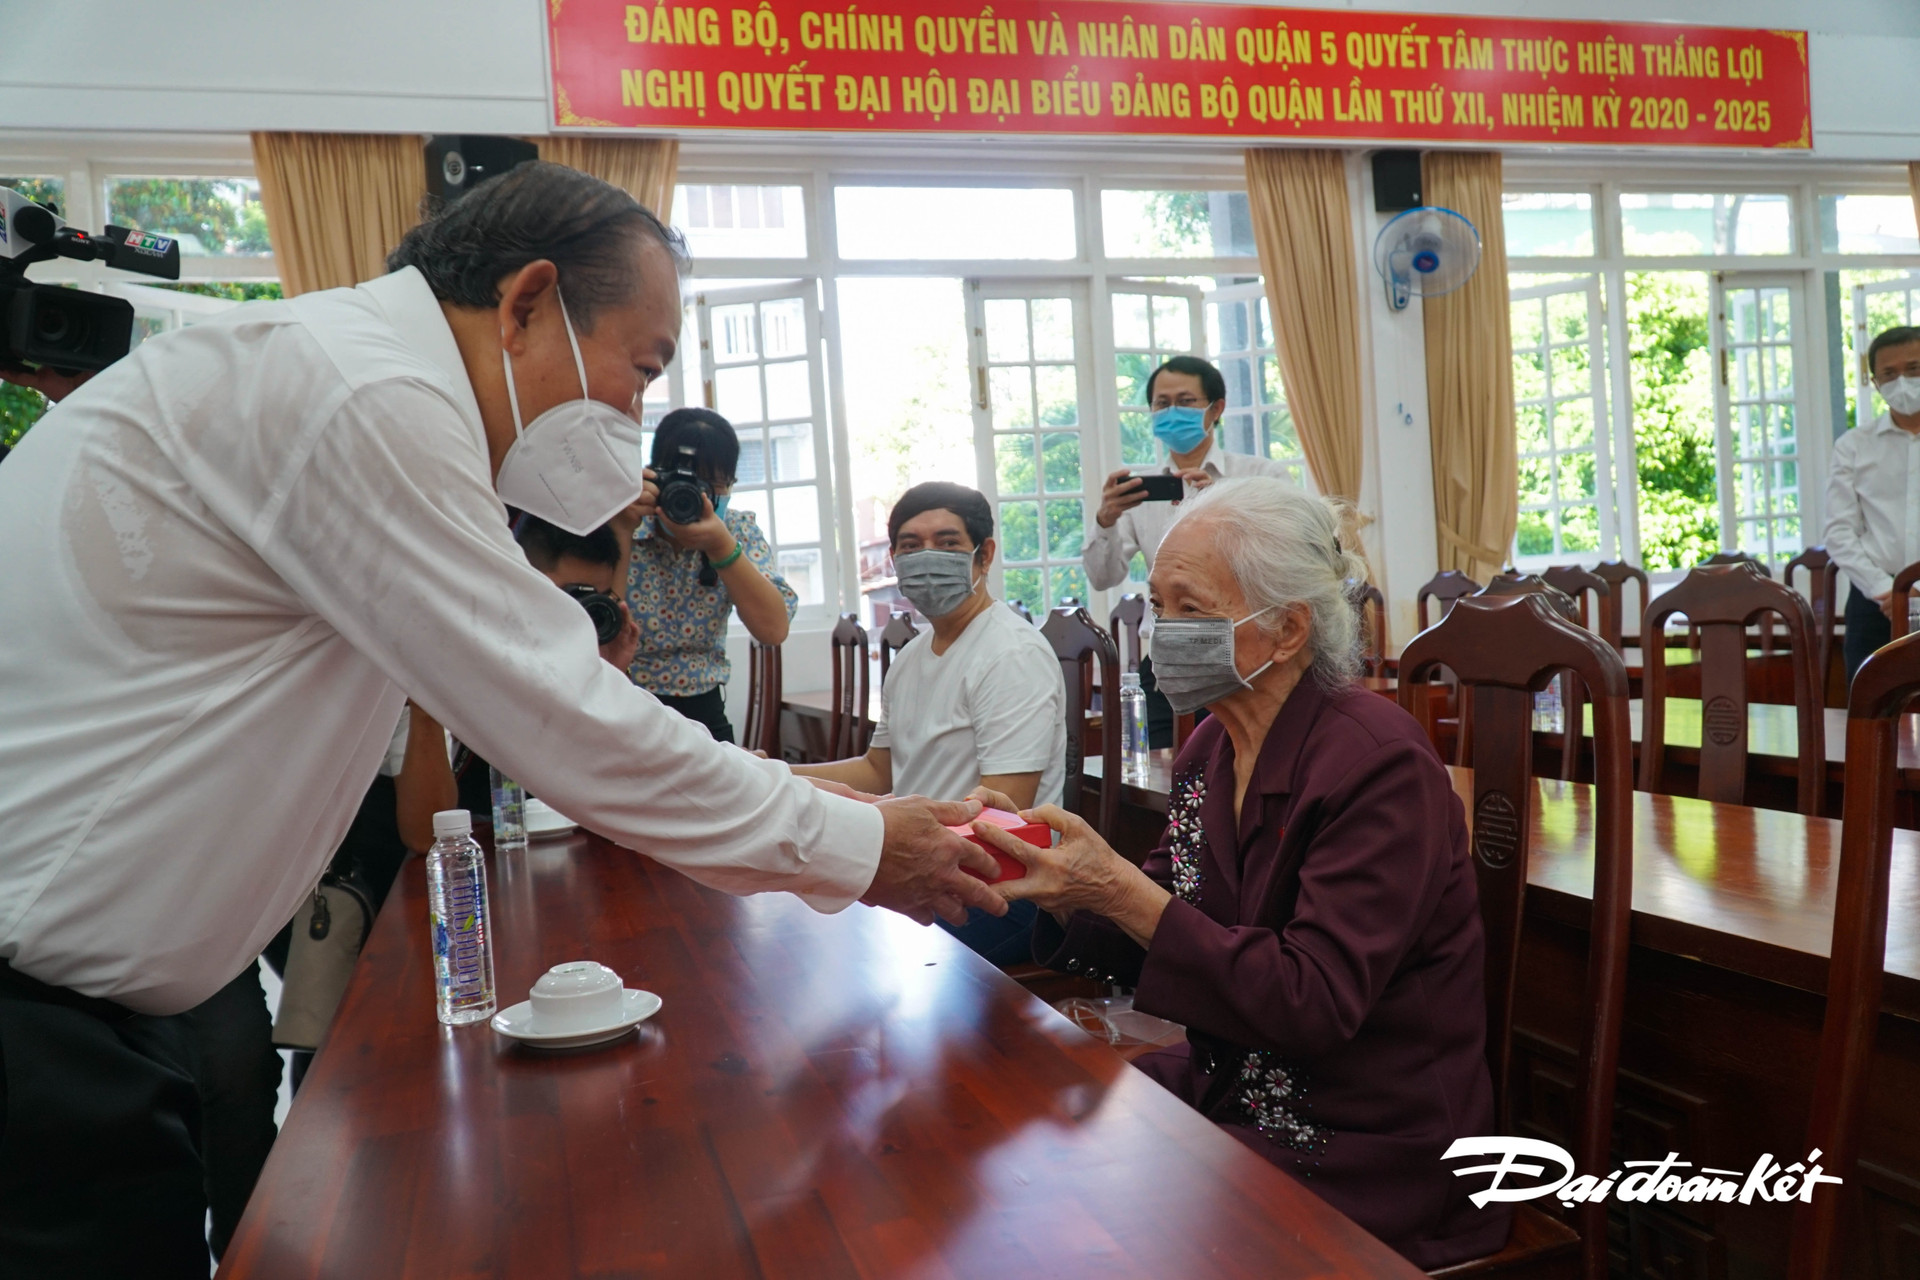 Phó Thủ tướng thường trực chính phủ Trương Hòa Bình ân cần tặng quà cho mẹ VNAH Võ Thị Tuội.